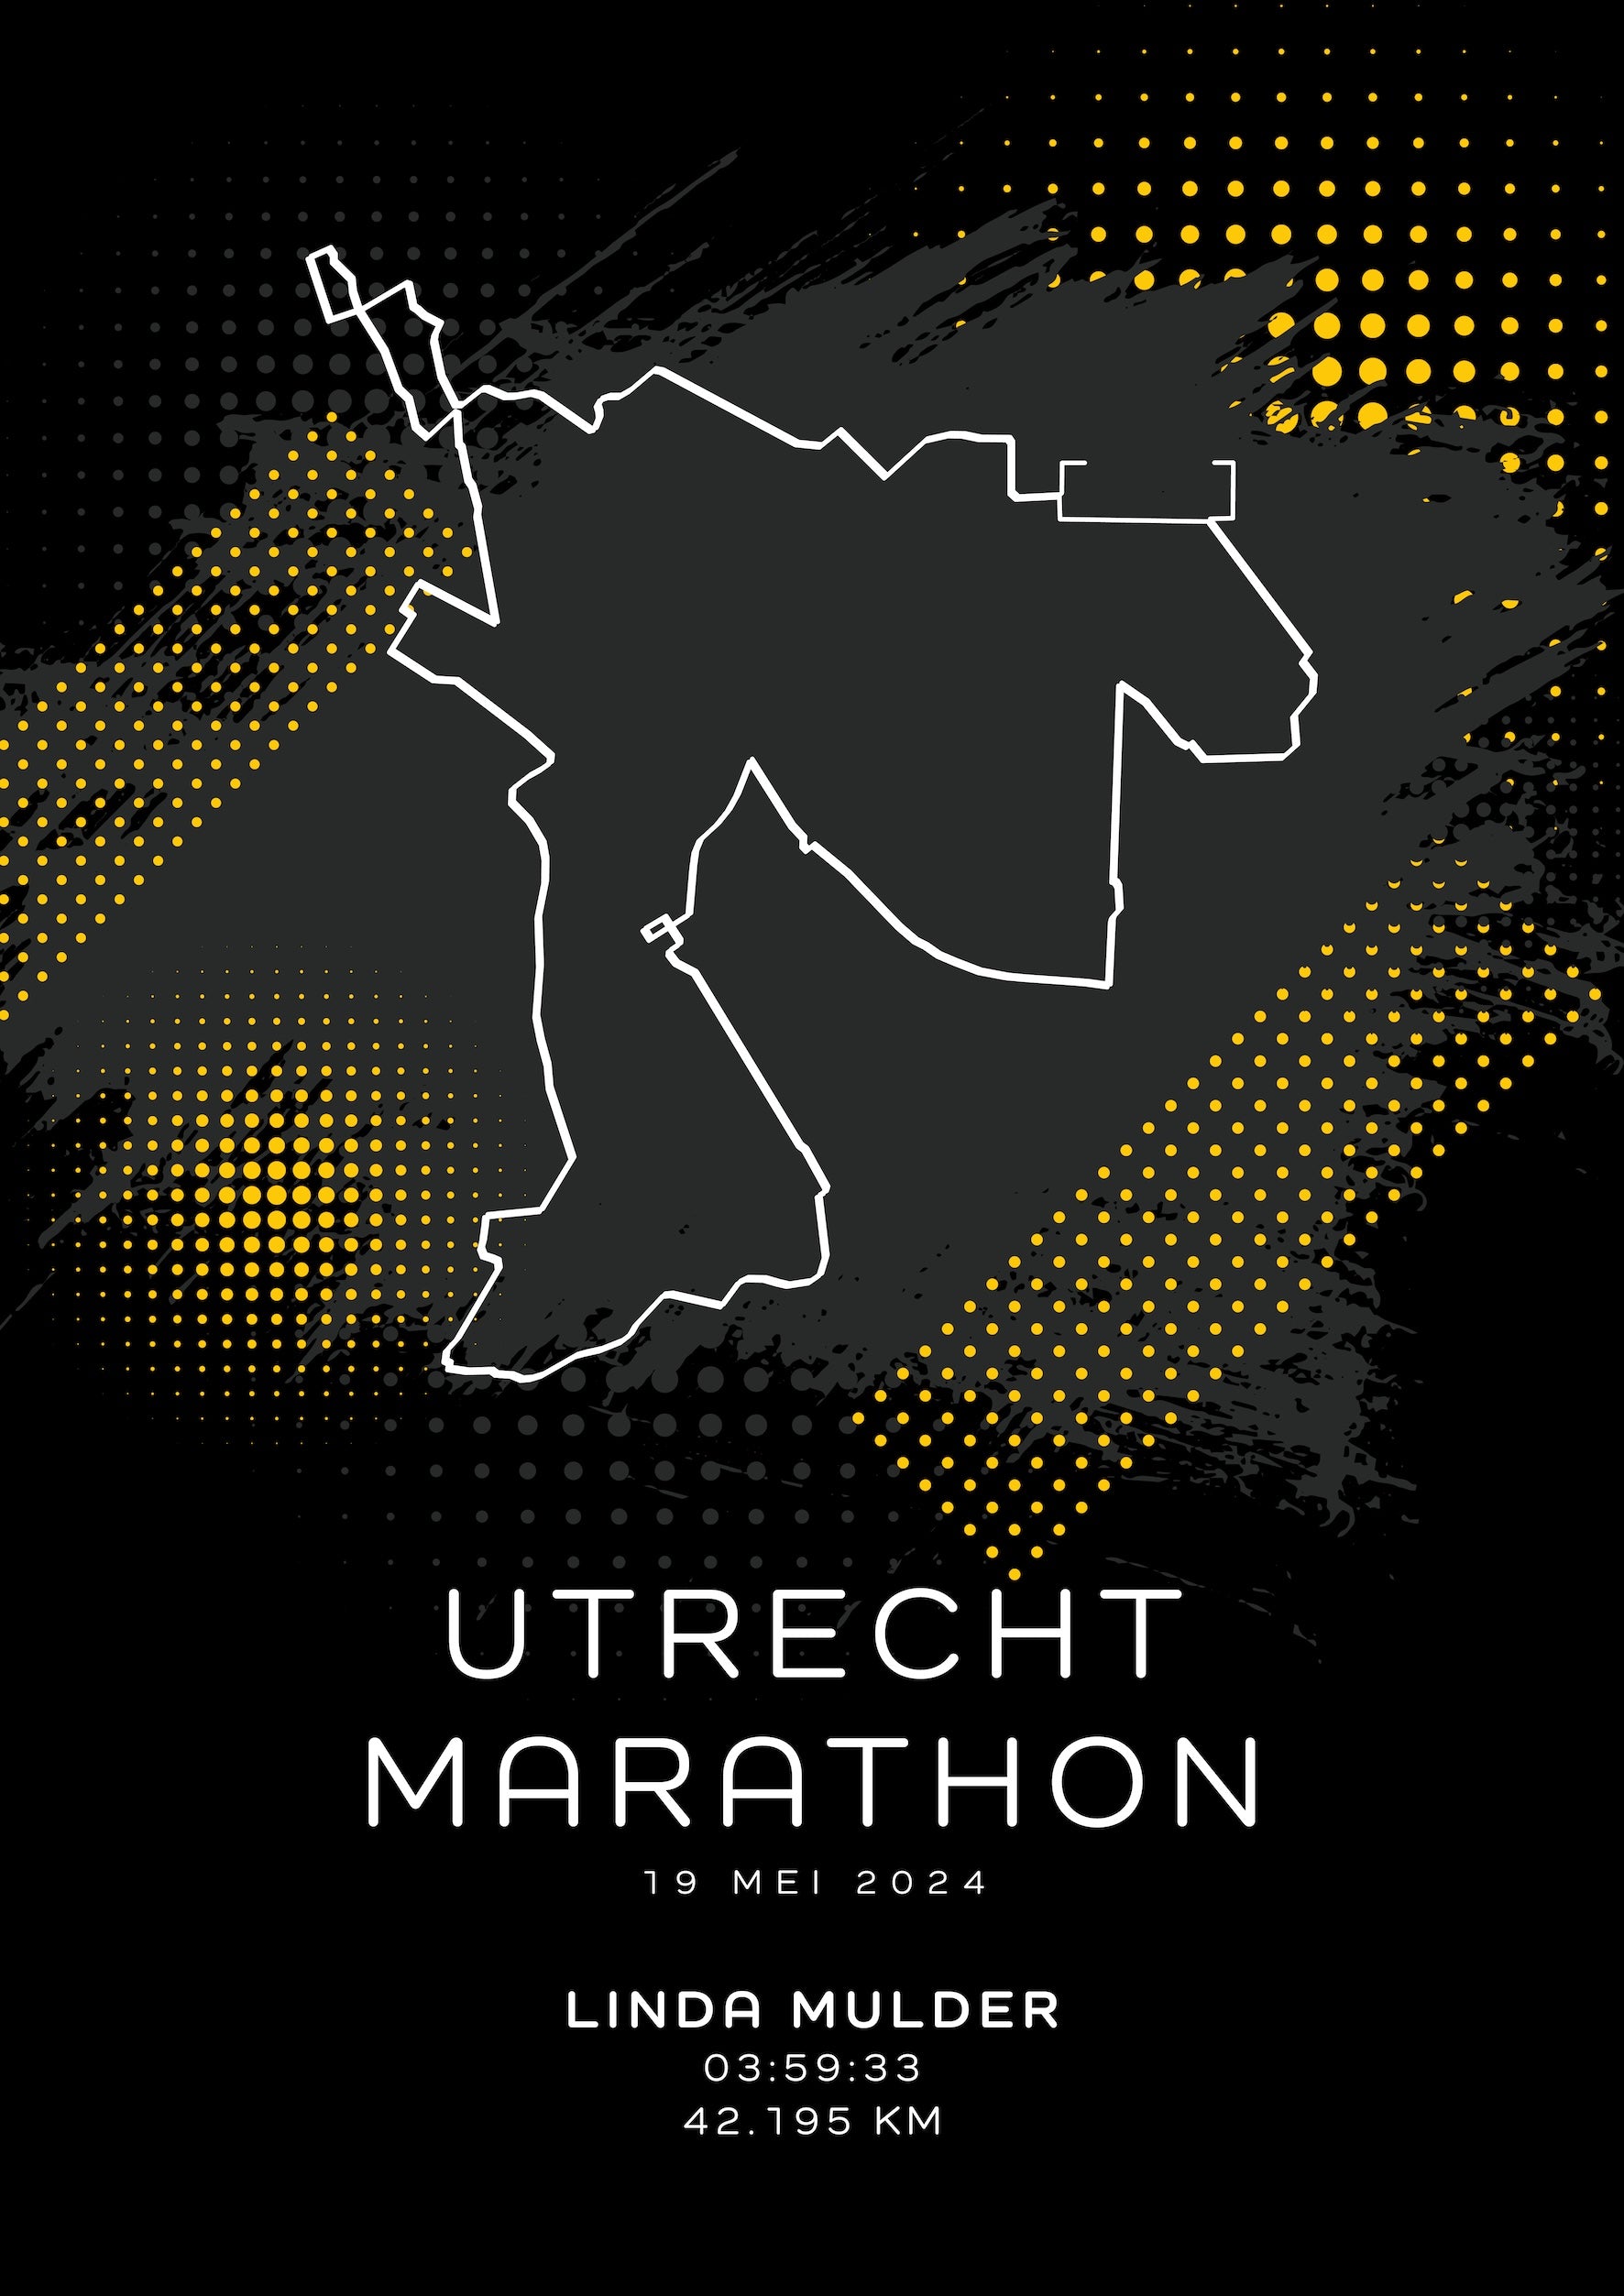 Utrecht Marathon - Modern Dark - Poster